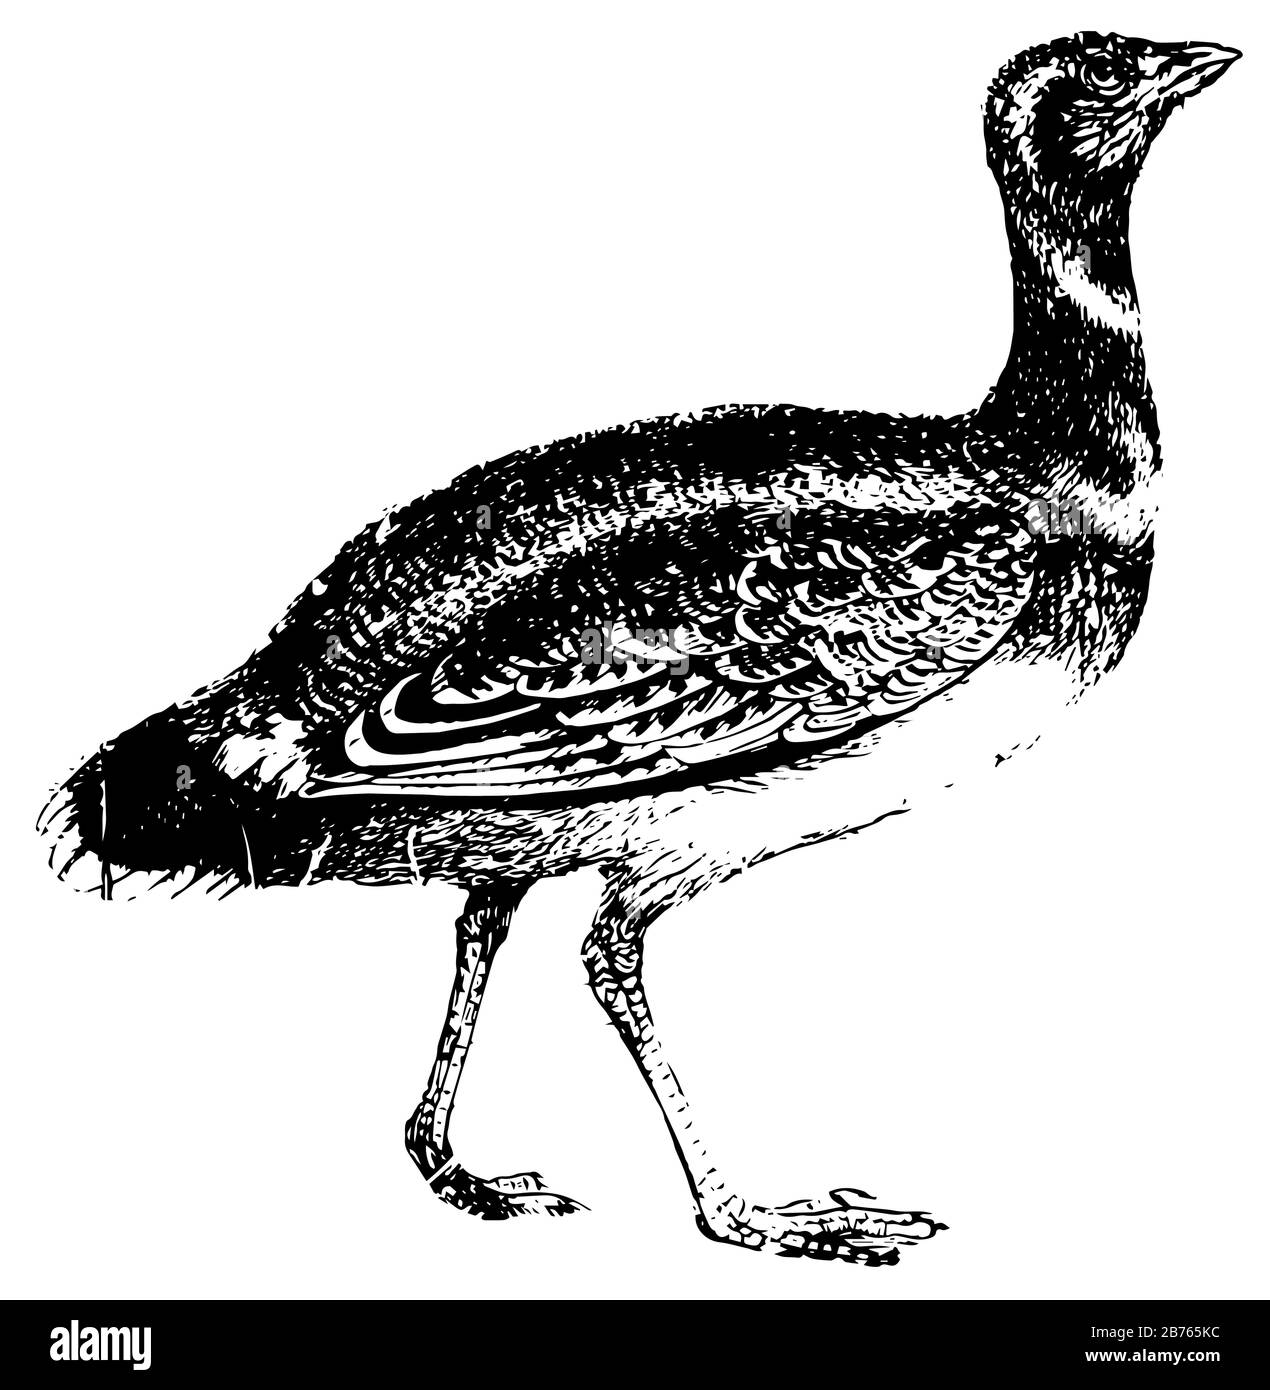 Bustard ist ein stockiger Vogel mit kräftigen Beinen, Vintage-Linien-Zeichnung oder Gravier-Illustration. Stock Vektor